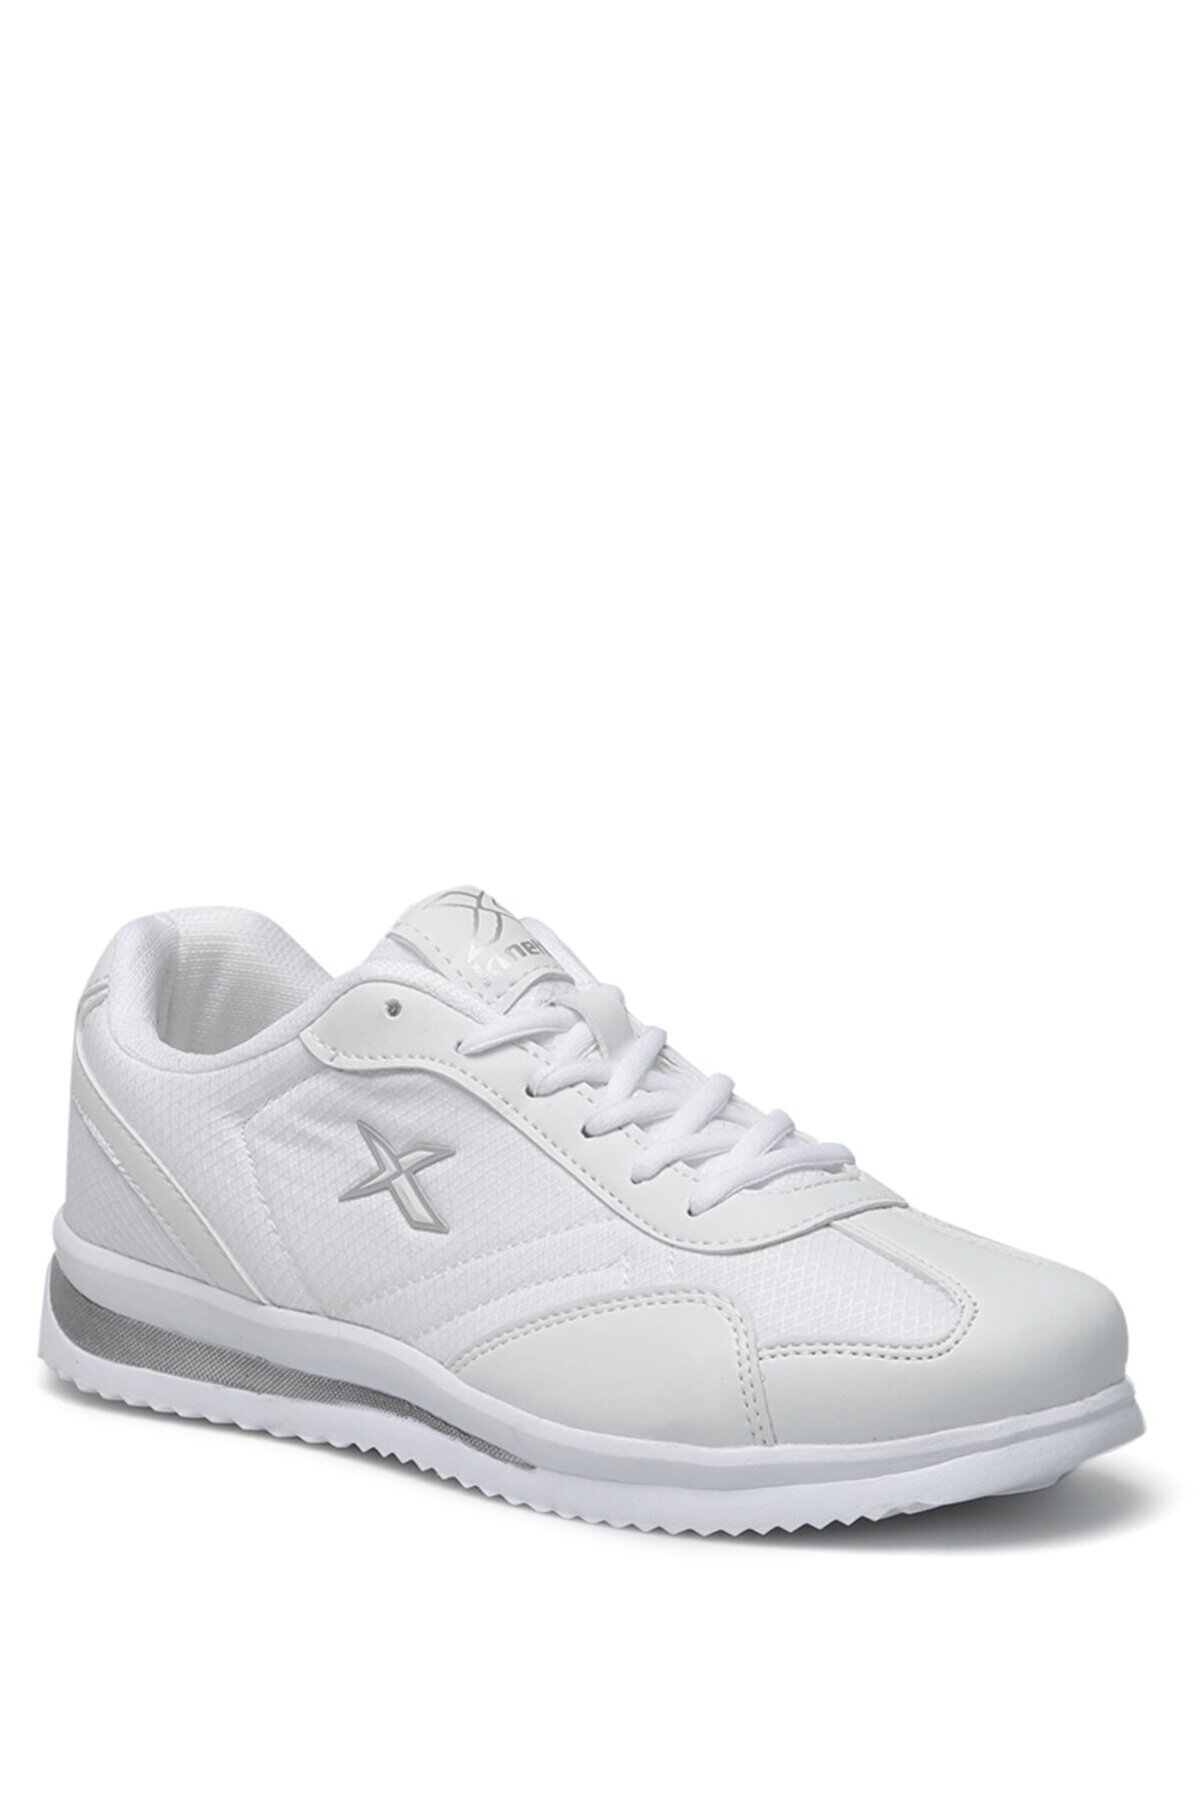 Kinetix Beyaz - Grande Tx W 2fx Kadın Sneaker